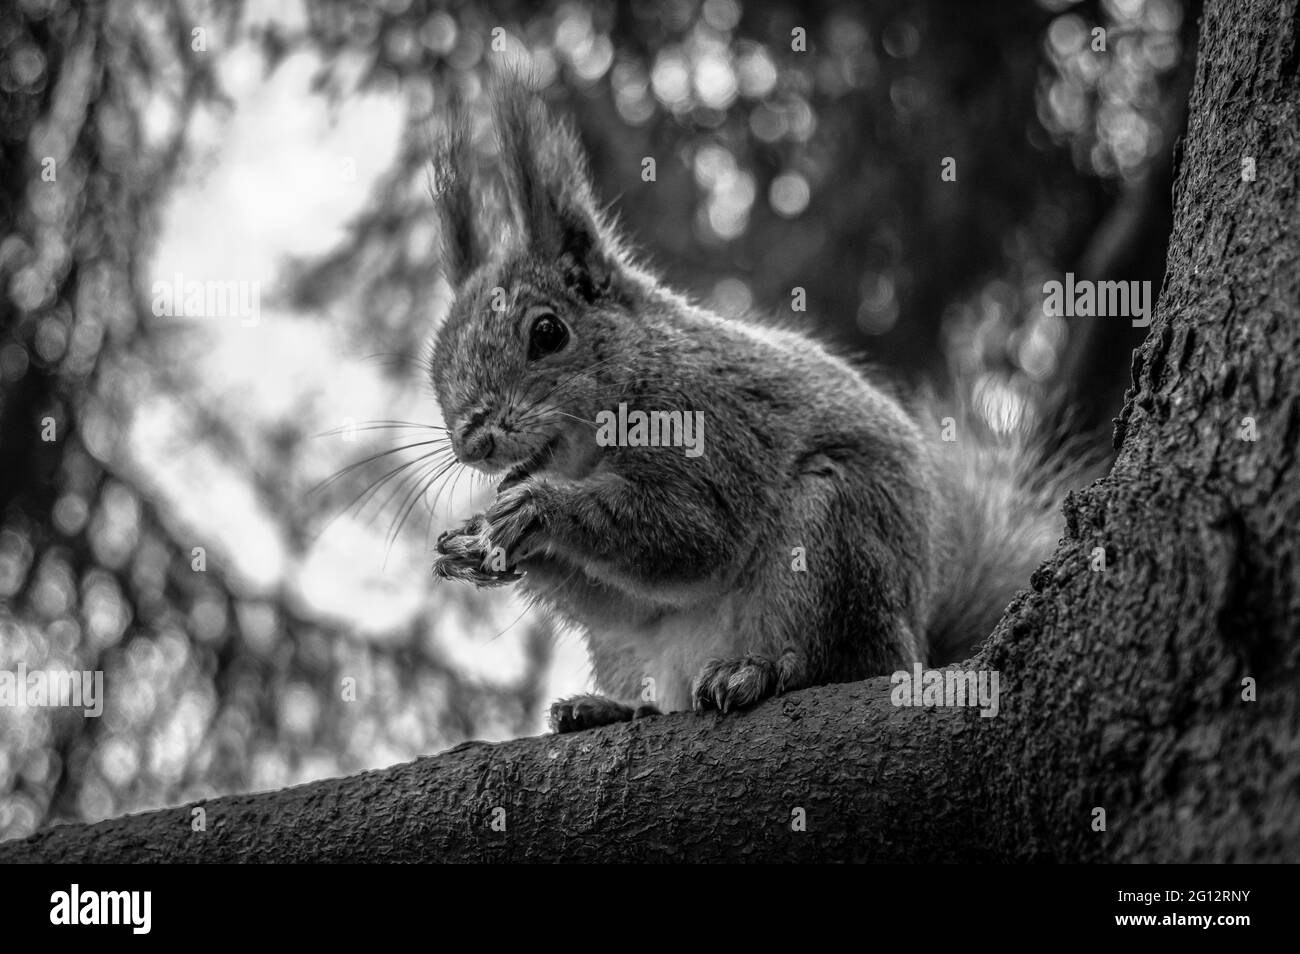 Écureuil agile qui habite les arbres avec une queue brousse qui se nourrit de noix. Noir et blanc. Banque D'Images